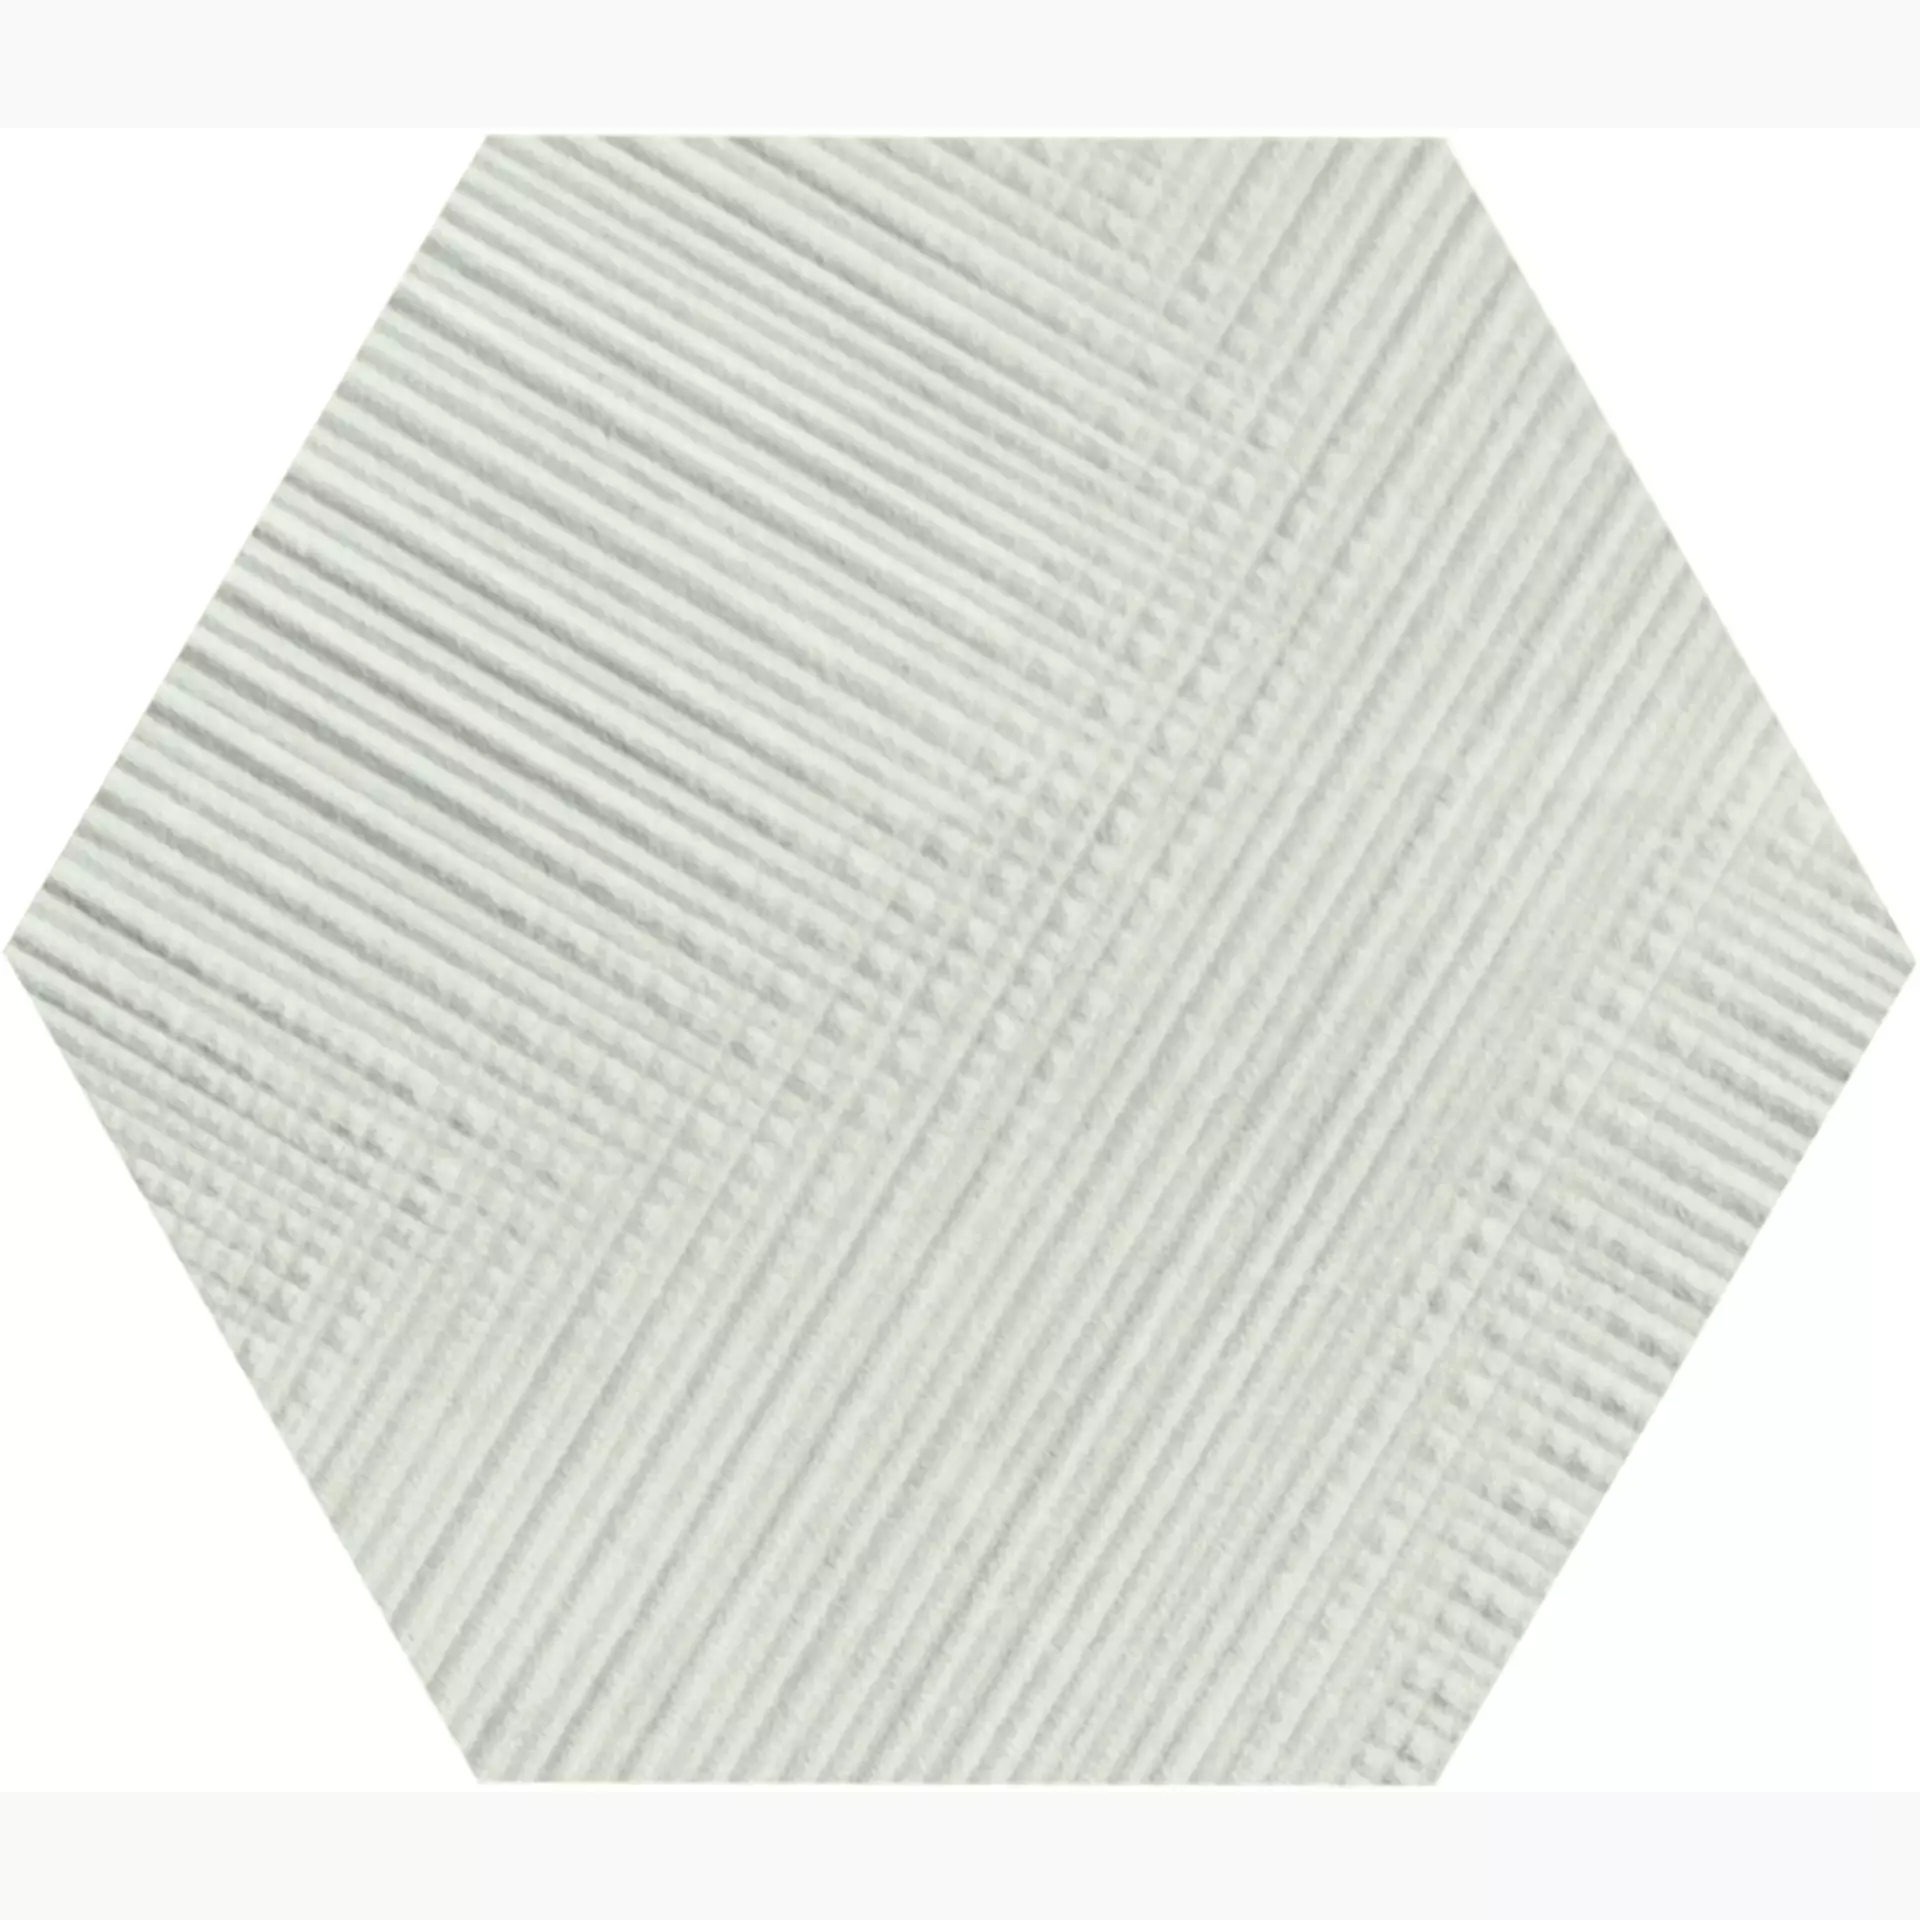 Provenza Eureka Bianco Naturale Bianco E035 natur struktur 19,3x22cm Esagona Tartan rektifiziert 9,5mm